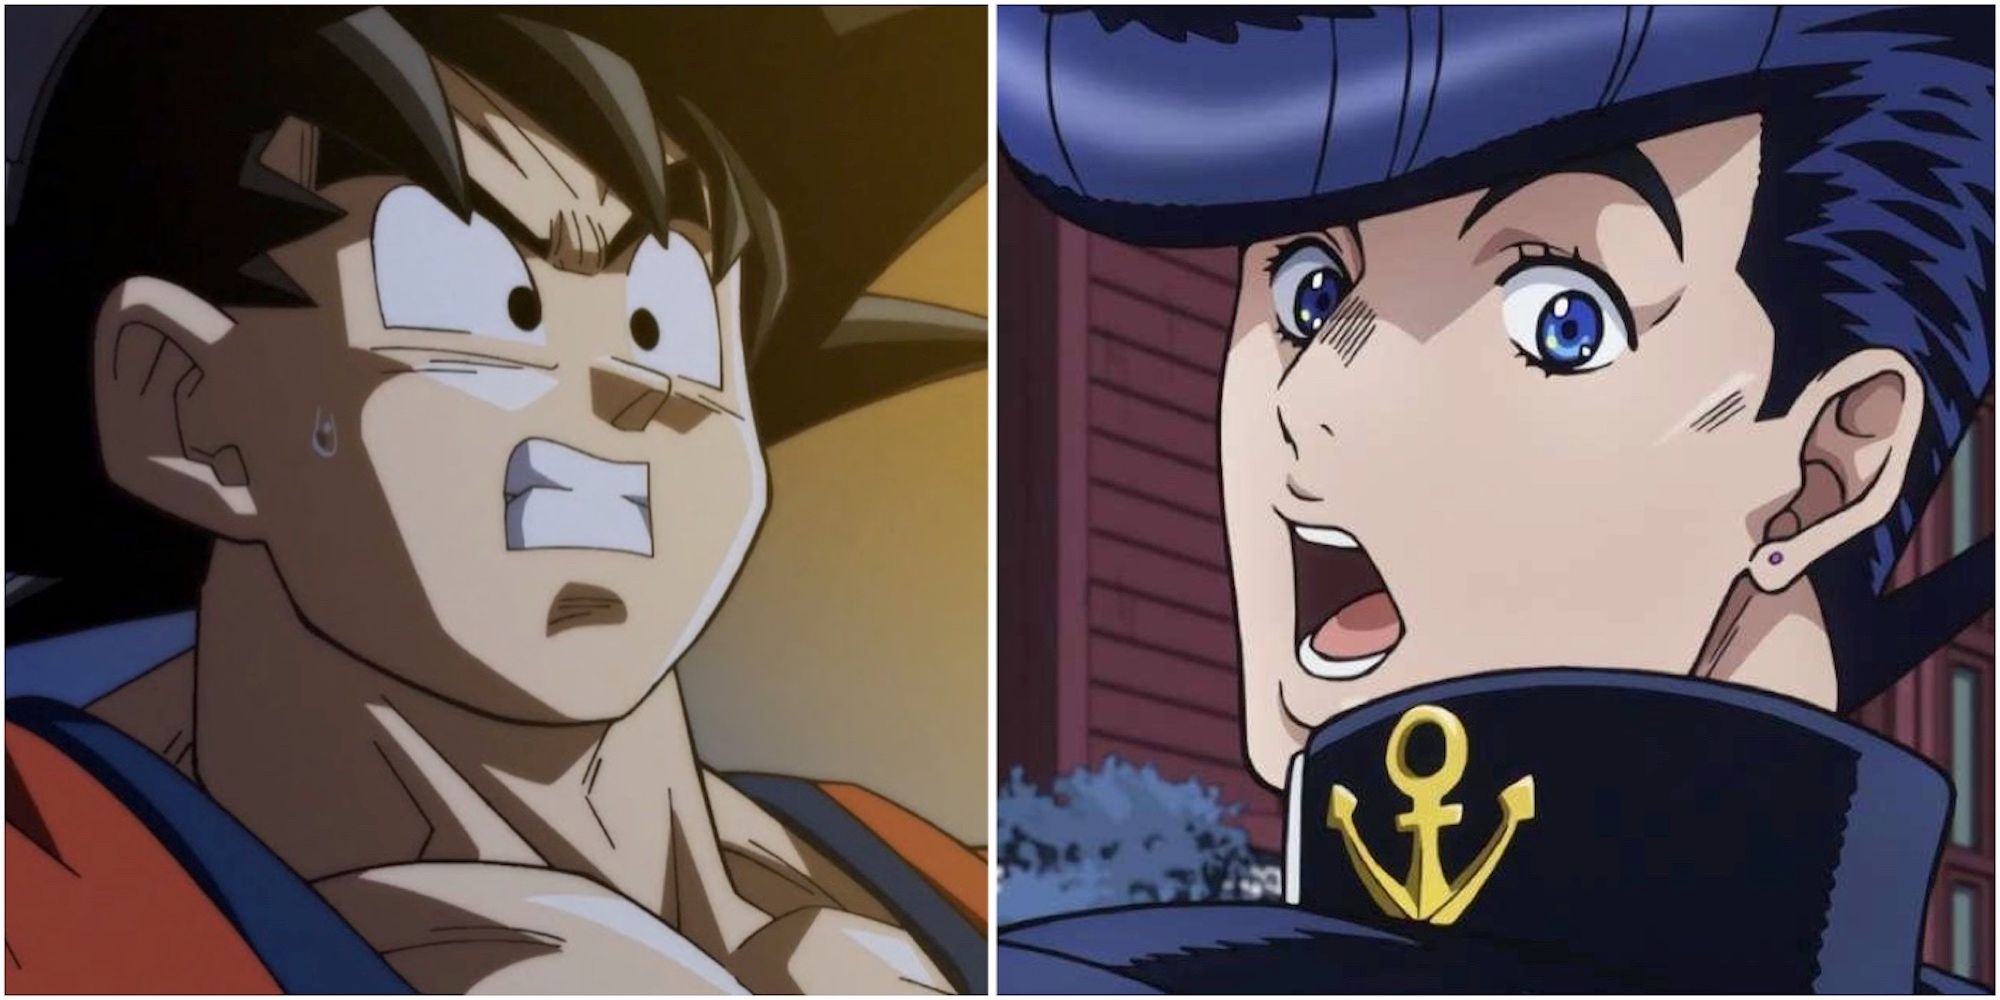 Goku from Dragon Ball Z and Joksuke from Jojo’s Bizarre Adventure